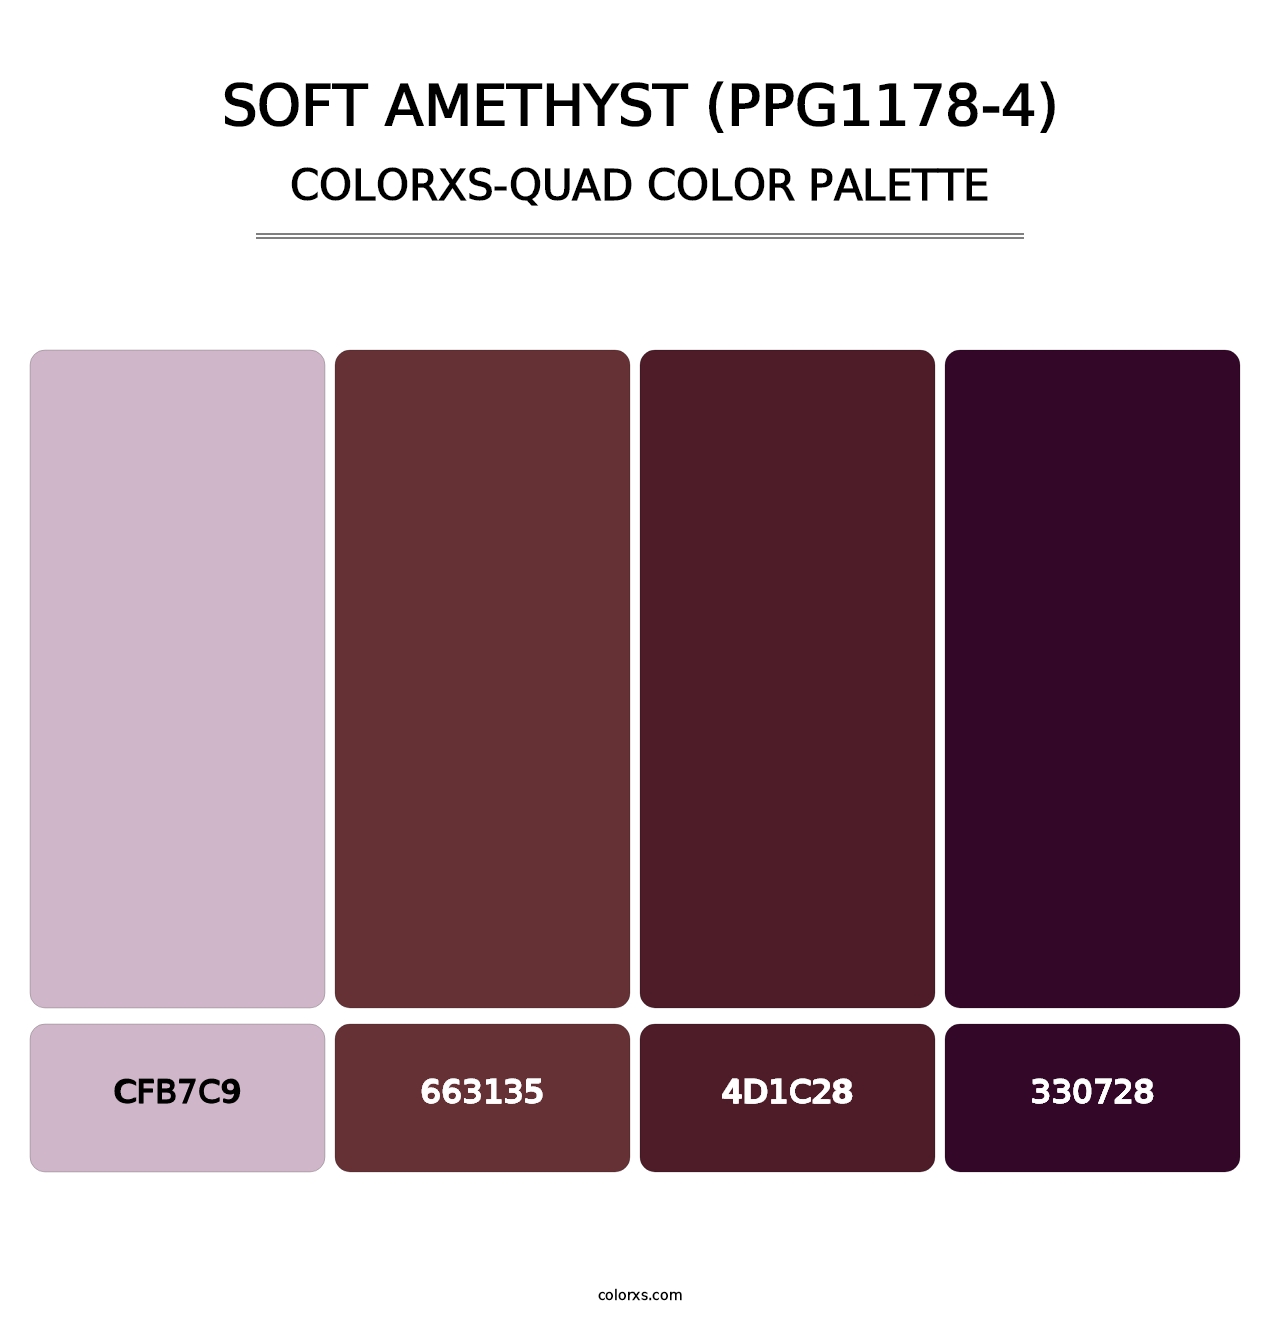 Soft Amethyst (PPG1178-4) - Colorxs Quad Palette